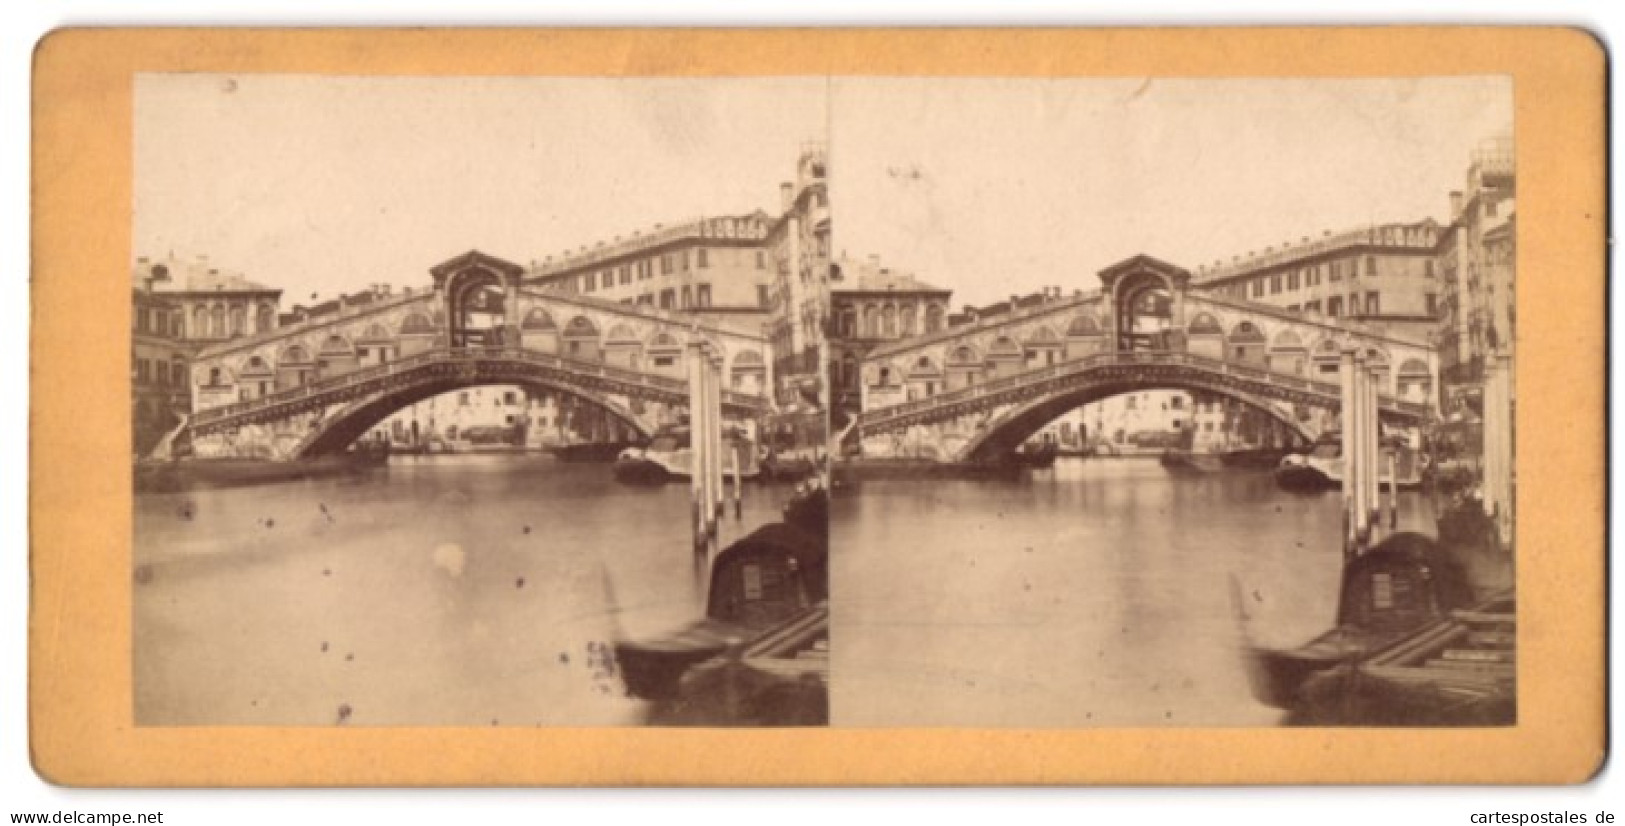 Stereo-Foto Unbekannter Fotograf, Ansicht Venedig, Blick Auf Die Rialto Brücke  - Photos Stéréoscopiques